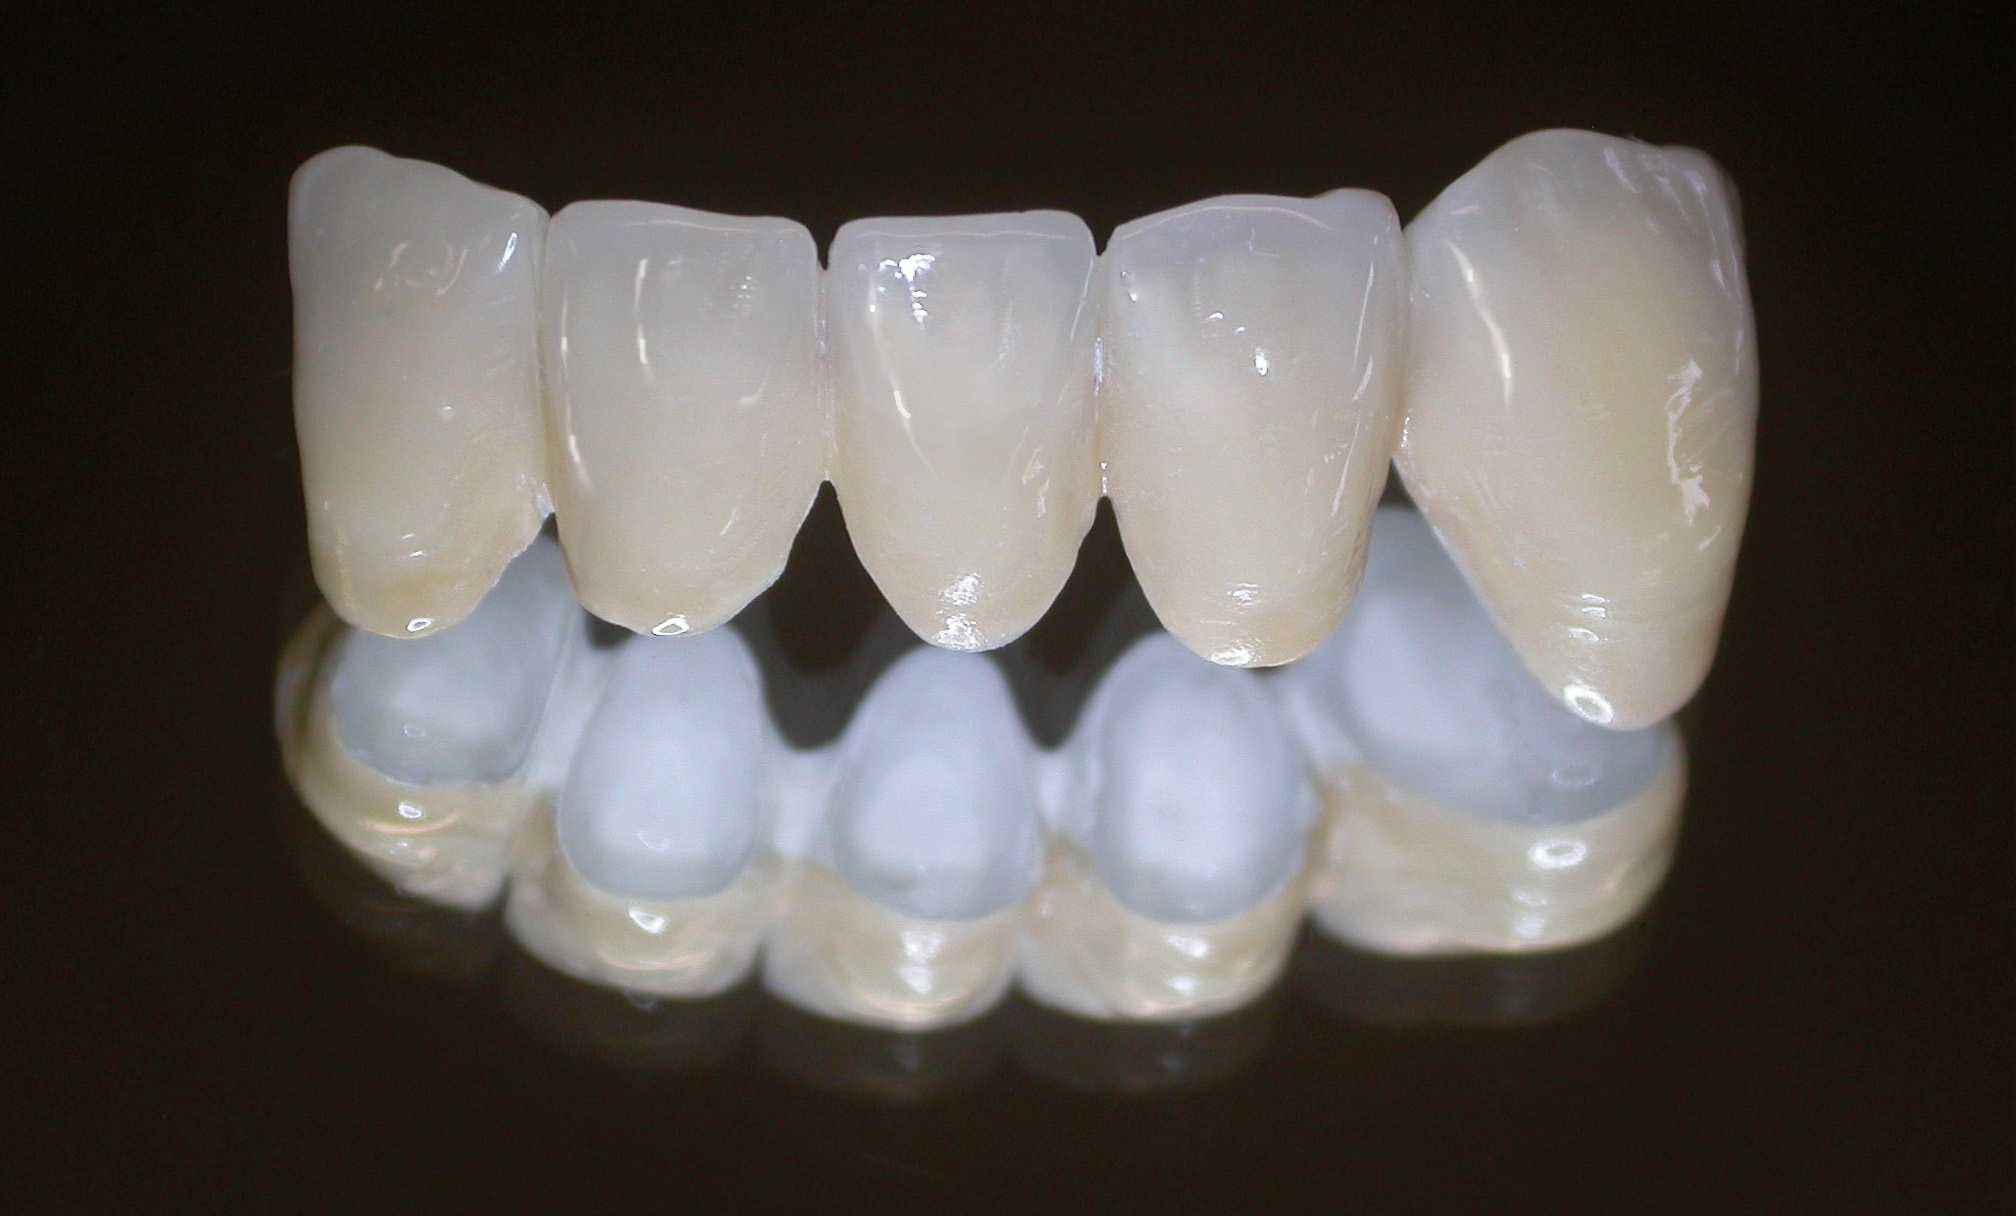 Протезирование зубов недорого: по полису омс, недорогие съемные протезы, недорогие несъемные протезы